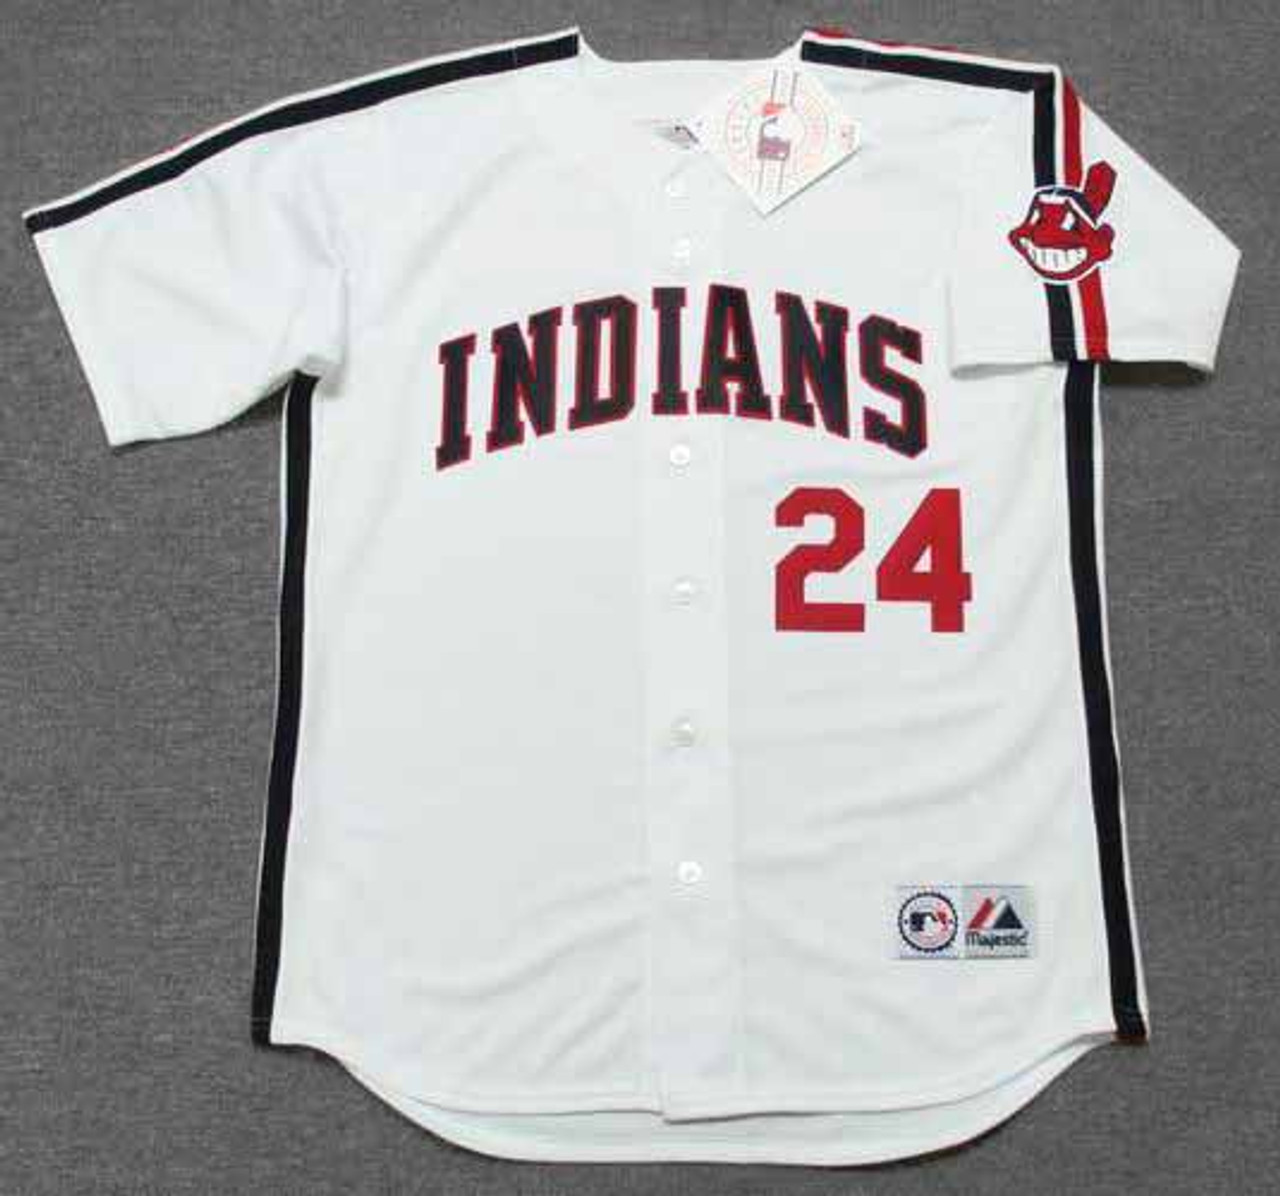 Corbin Bernsen Roger Dorn Signed Cleveland Indians Jersey (Beckett